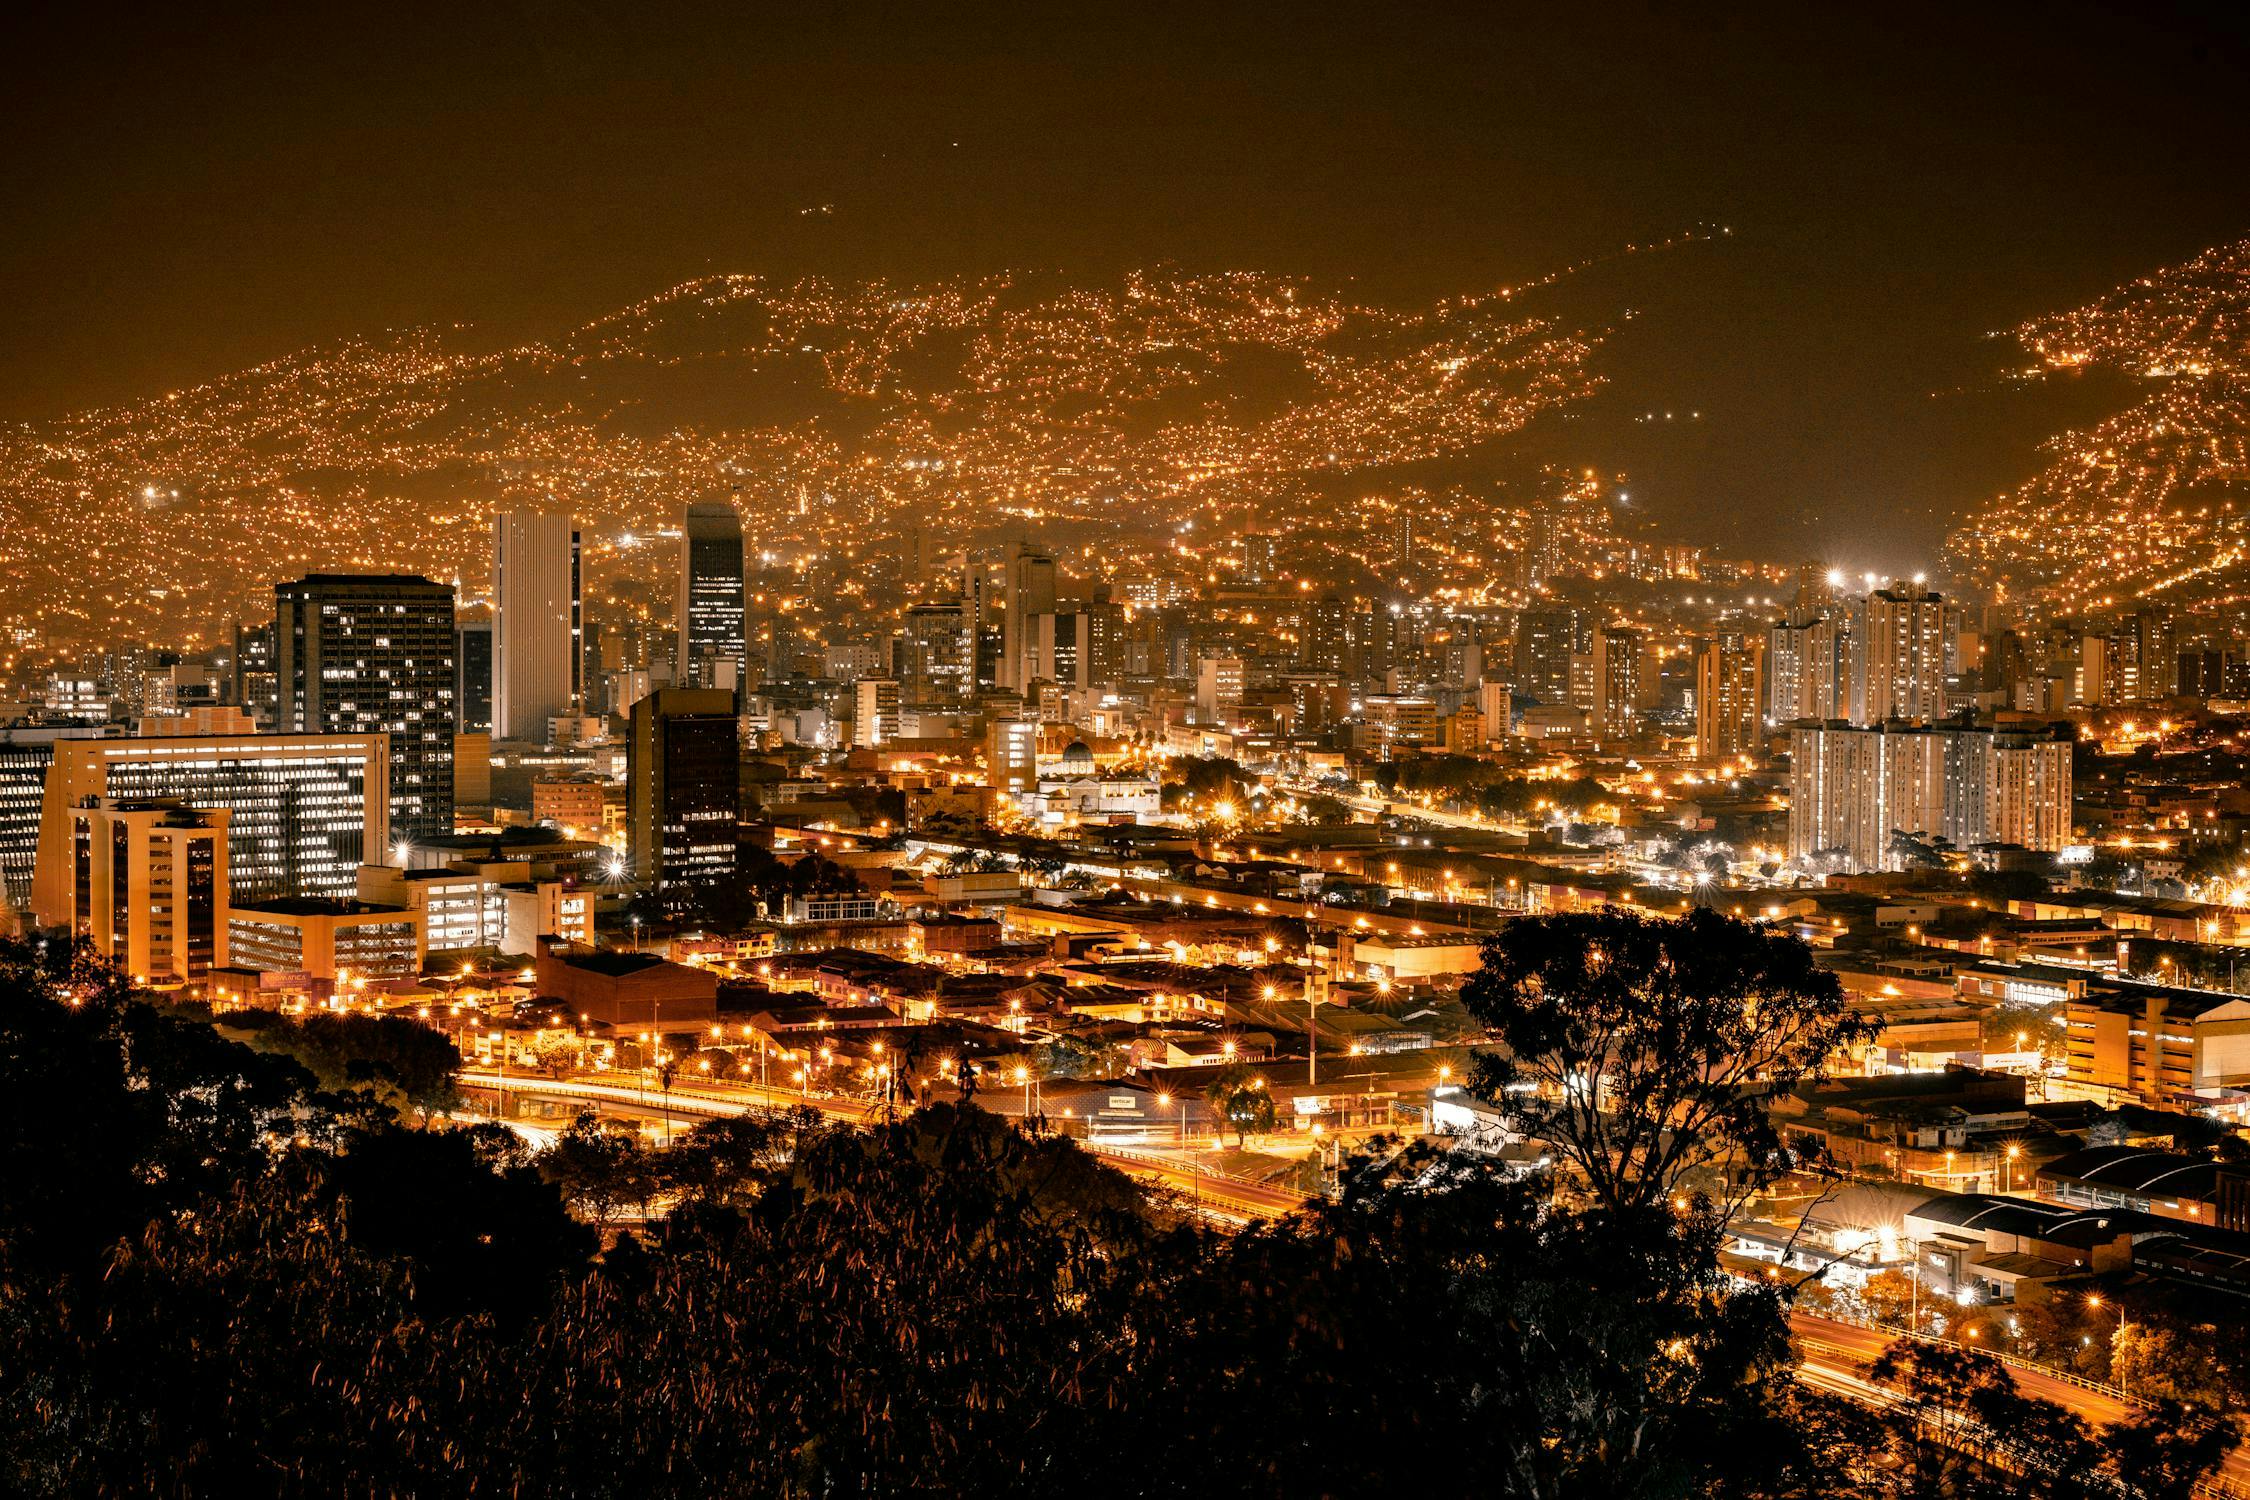 View of Medellín